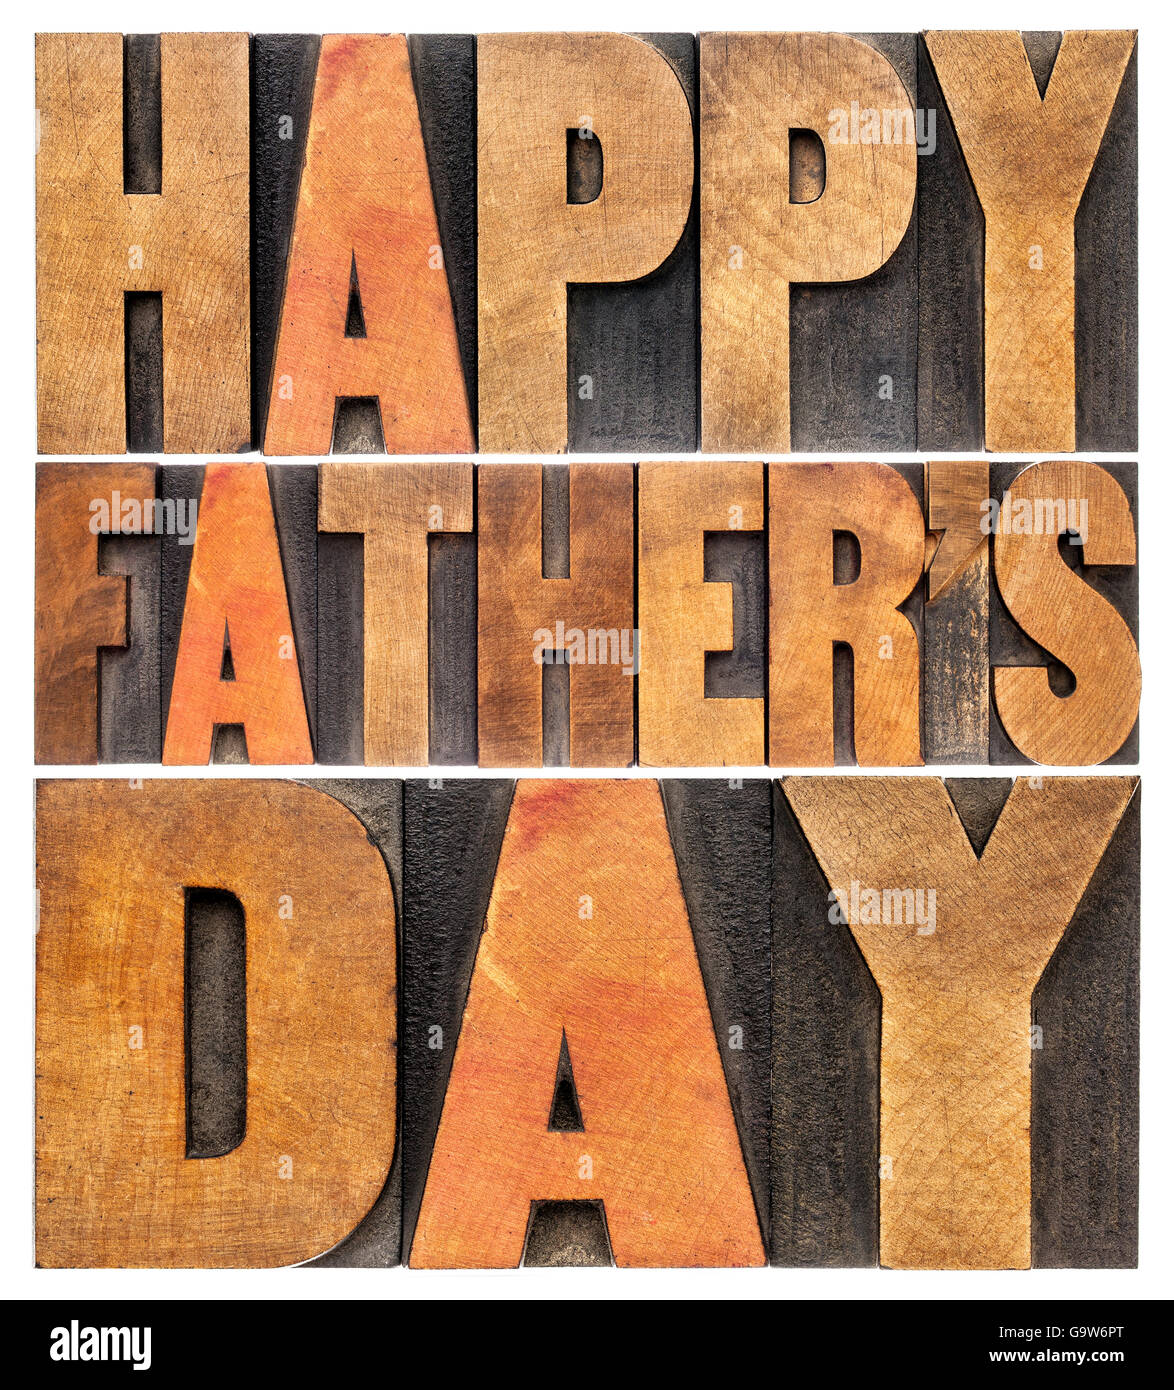 Happy father's day greetings - mots isolés en bois anciens blocs de la typographie Banque D'Images